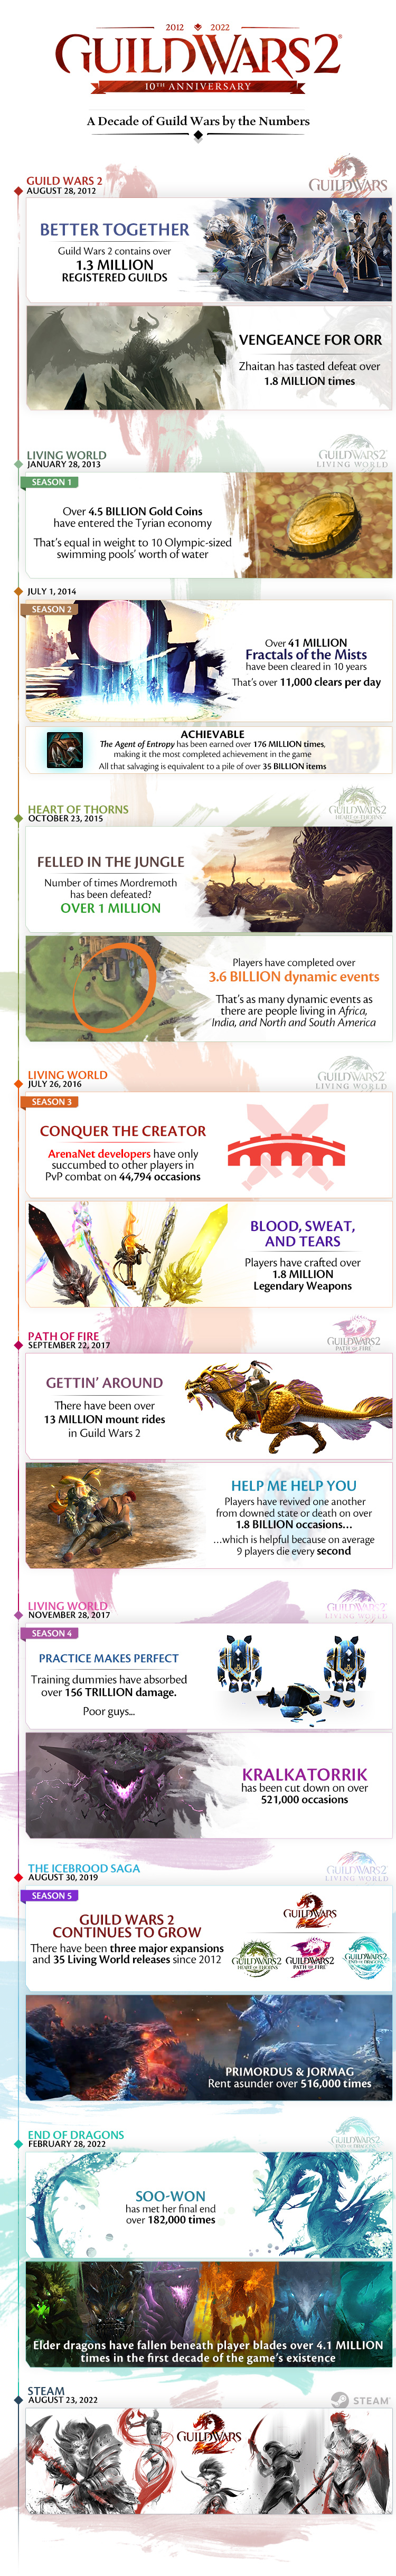 Разработчики MMORPG Guild Wars 2 опубликовали инфографику за 10 лет существания игры